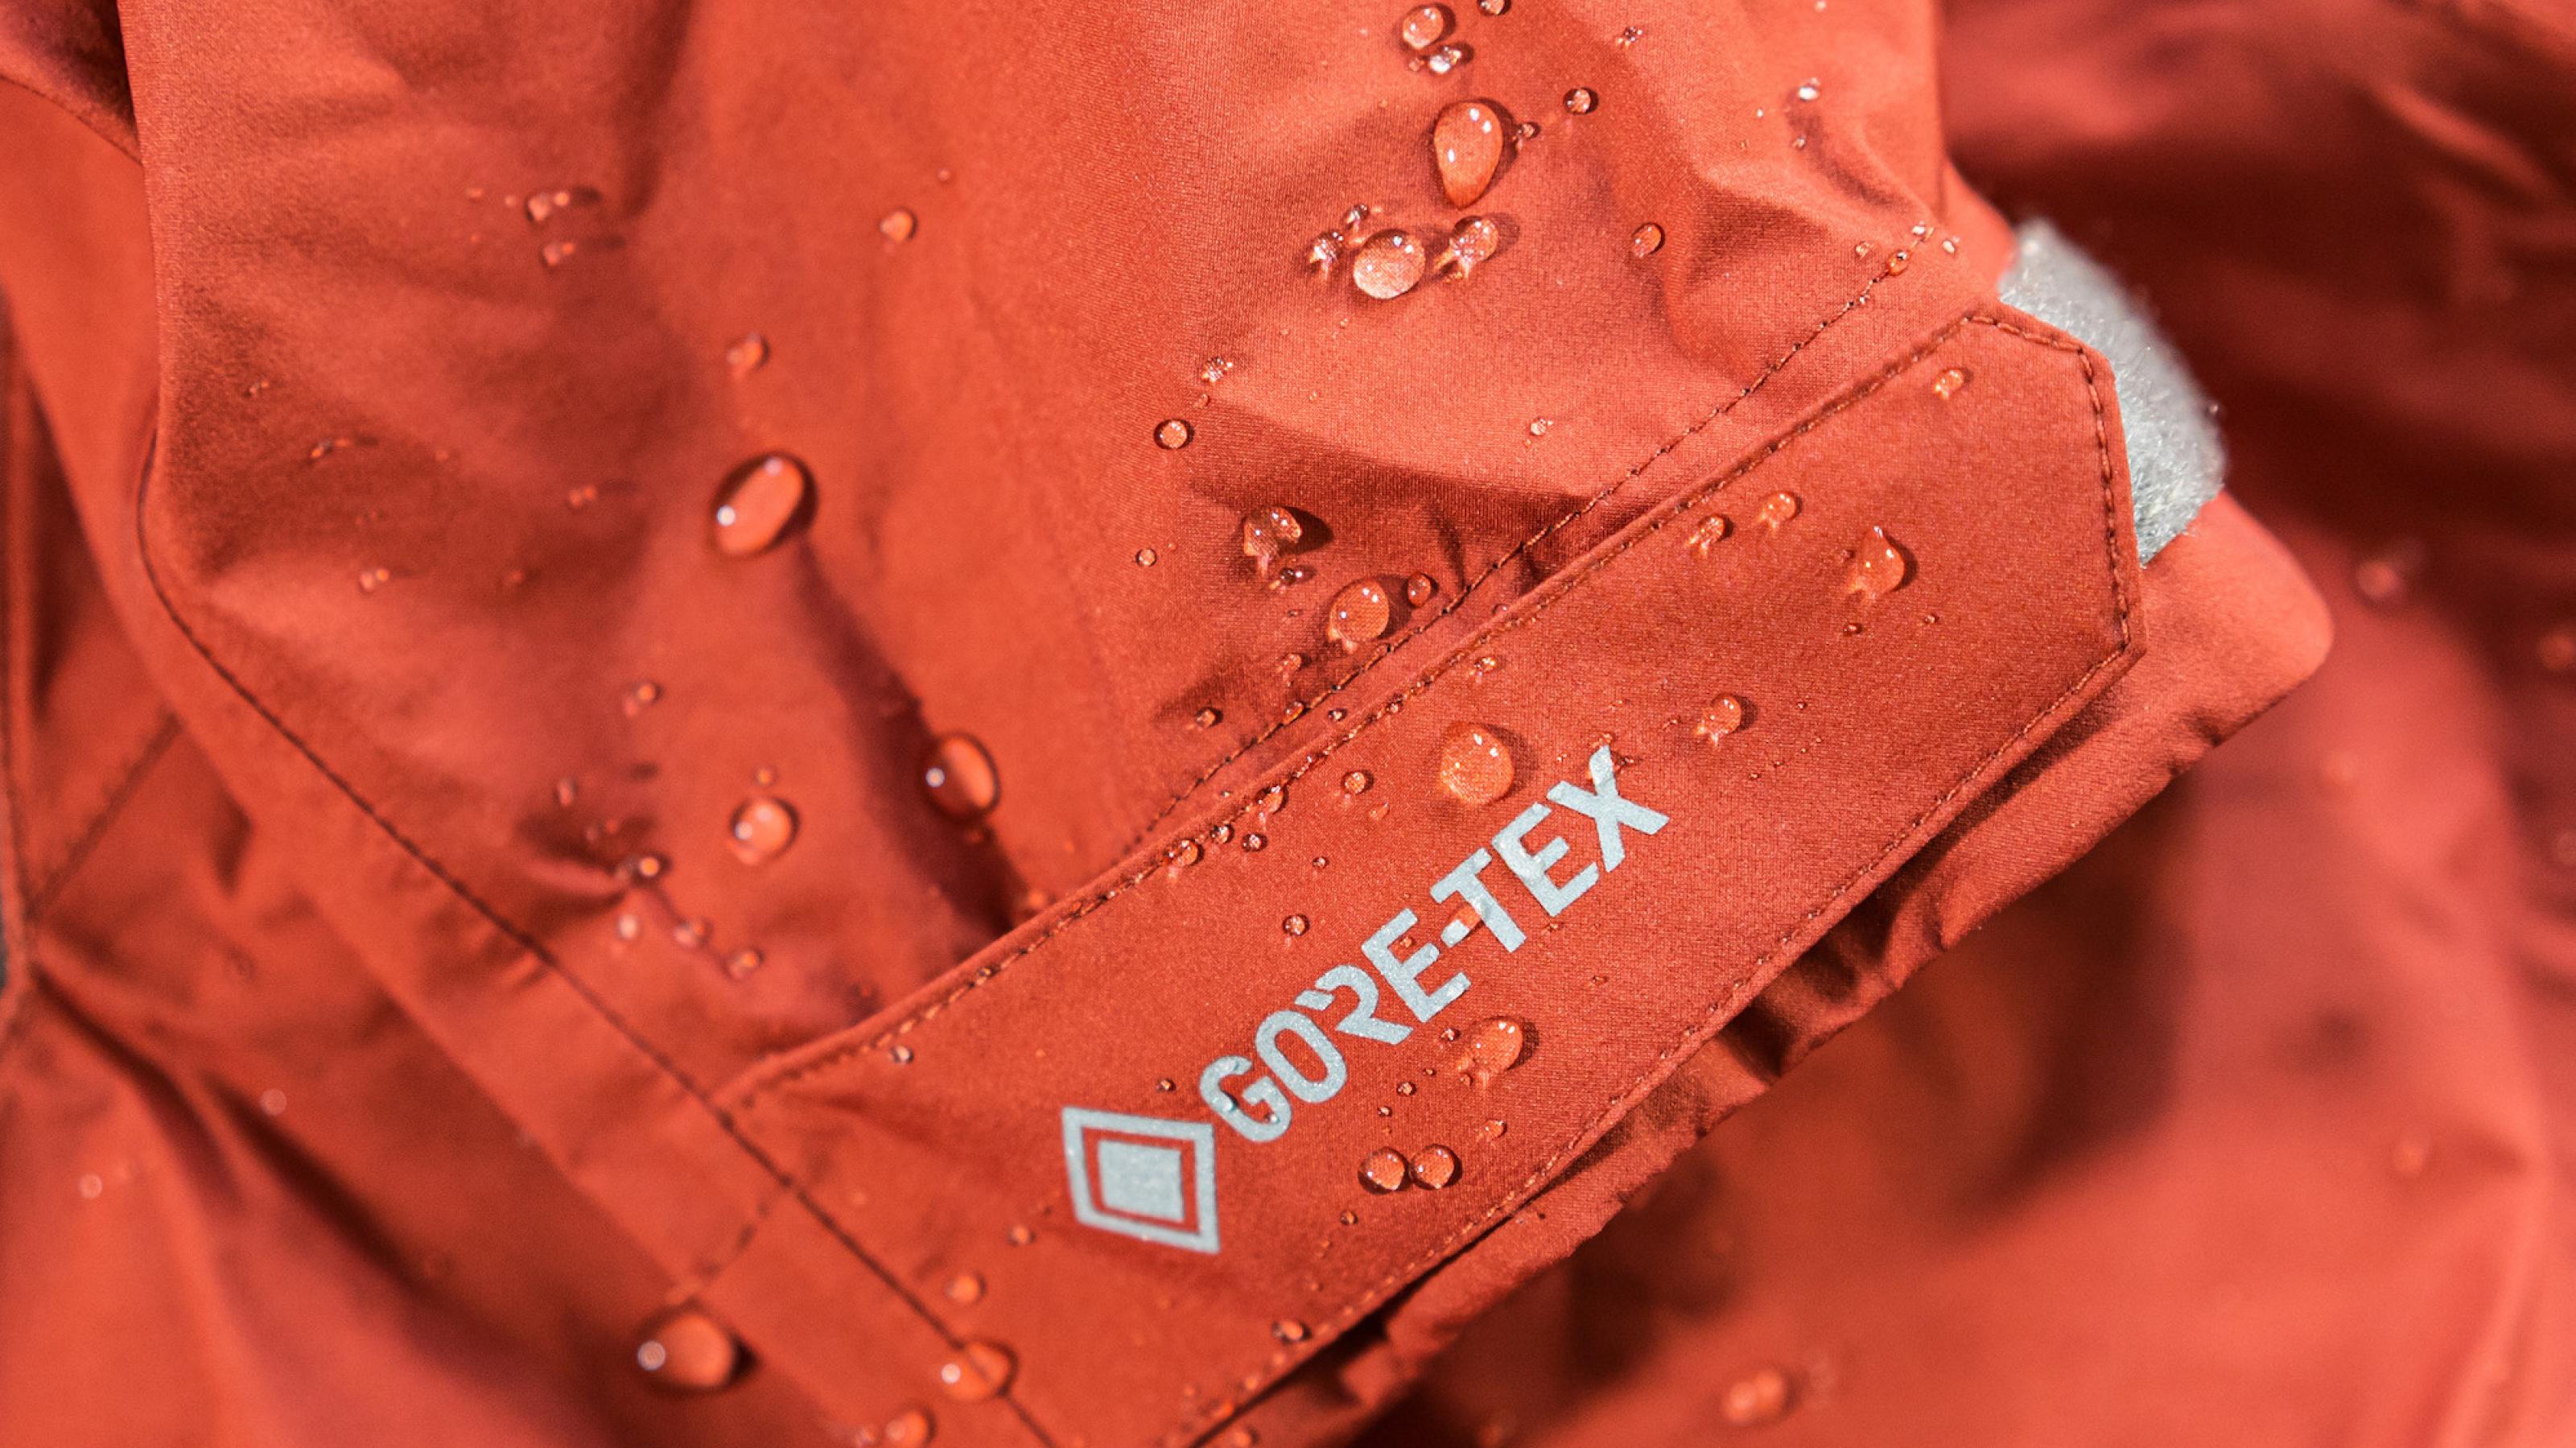 Ausschnitt einer orange-roten Outdoor-Jacke mit abperlenden Wassertropfen